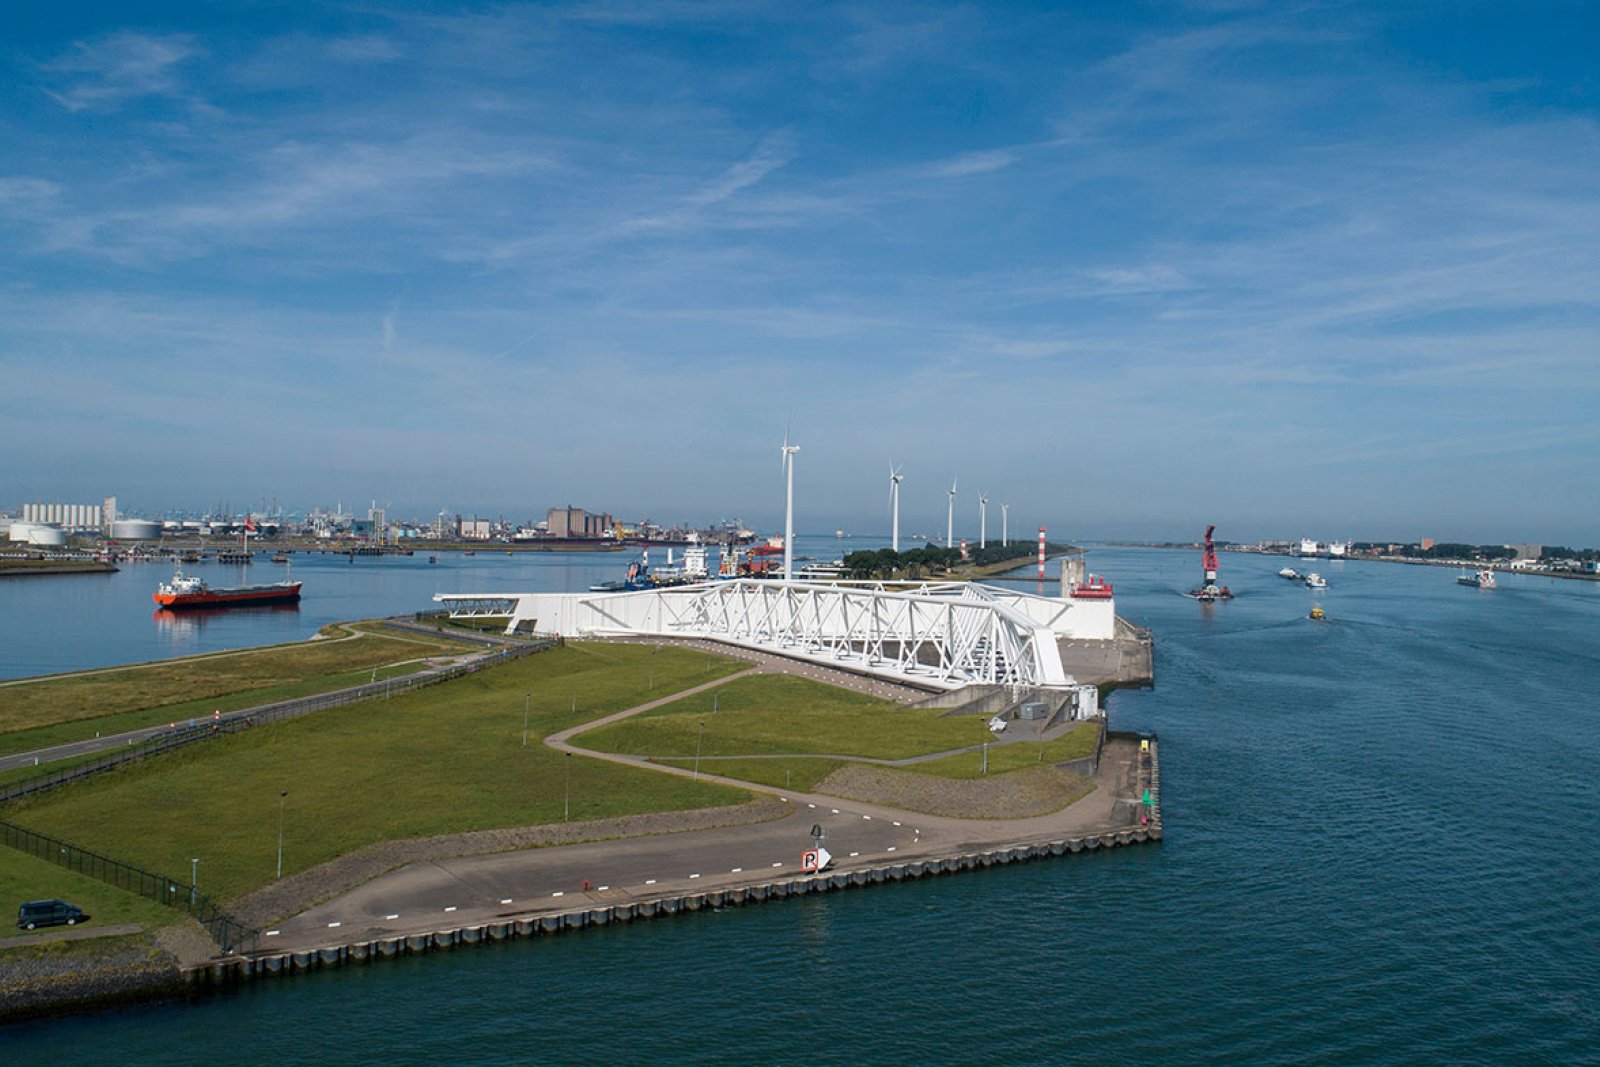 Maeslantkering Hoek van Holland, Rotterdam